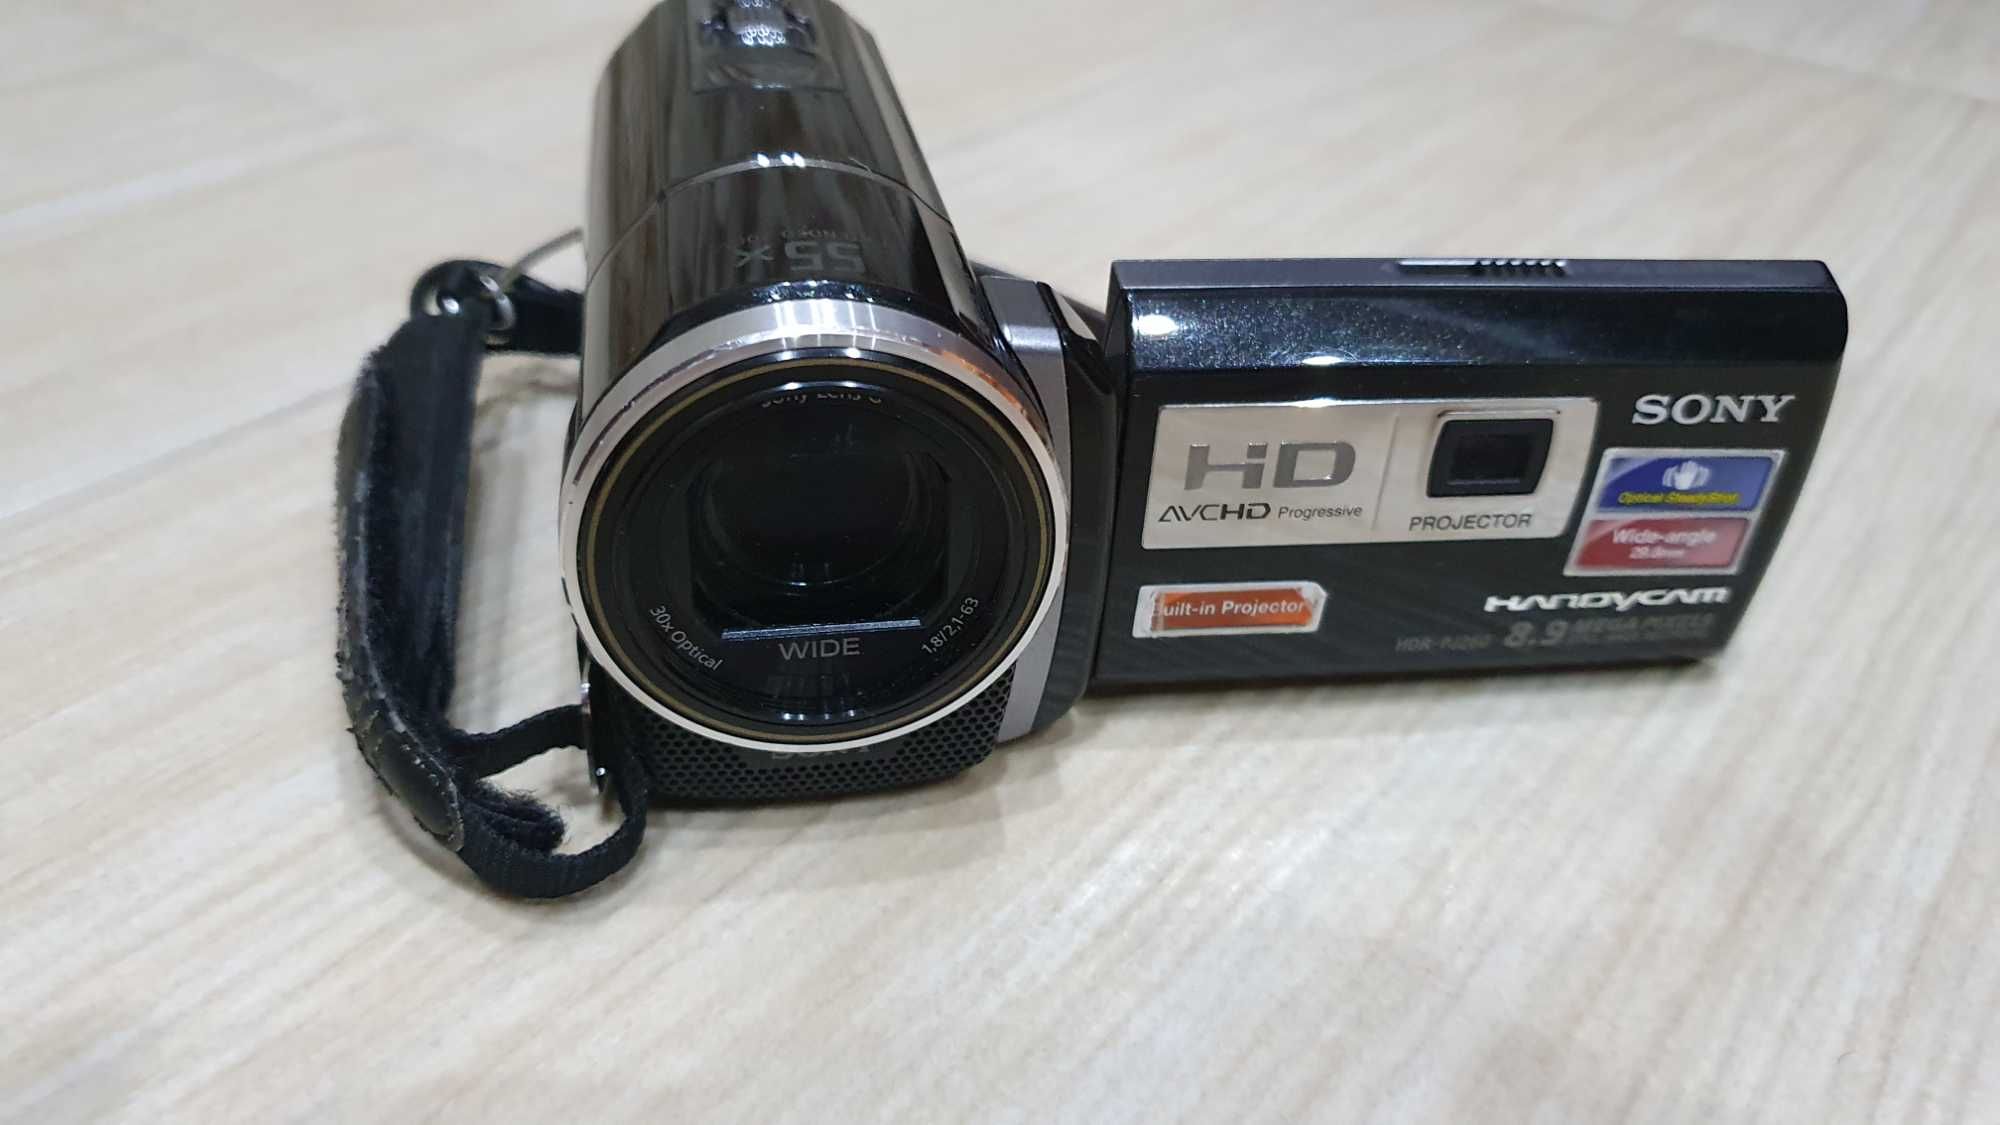 Kamera SONY HDR-PJ260VE z dyskiem wewnętrznym i wbudowanym projektorem